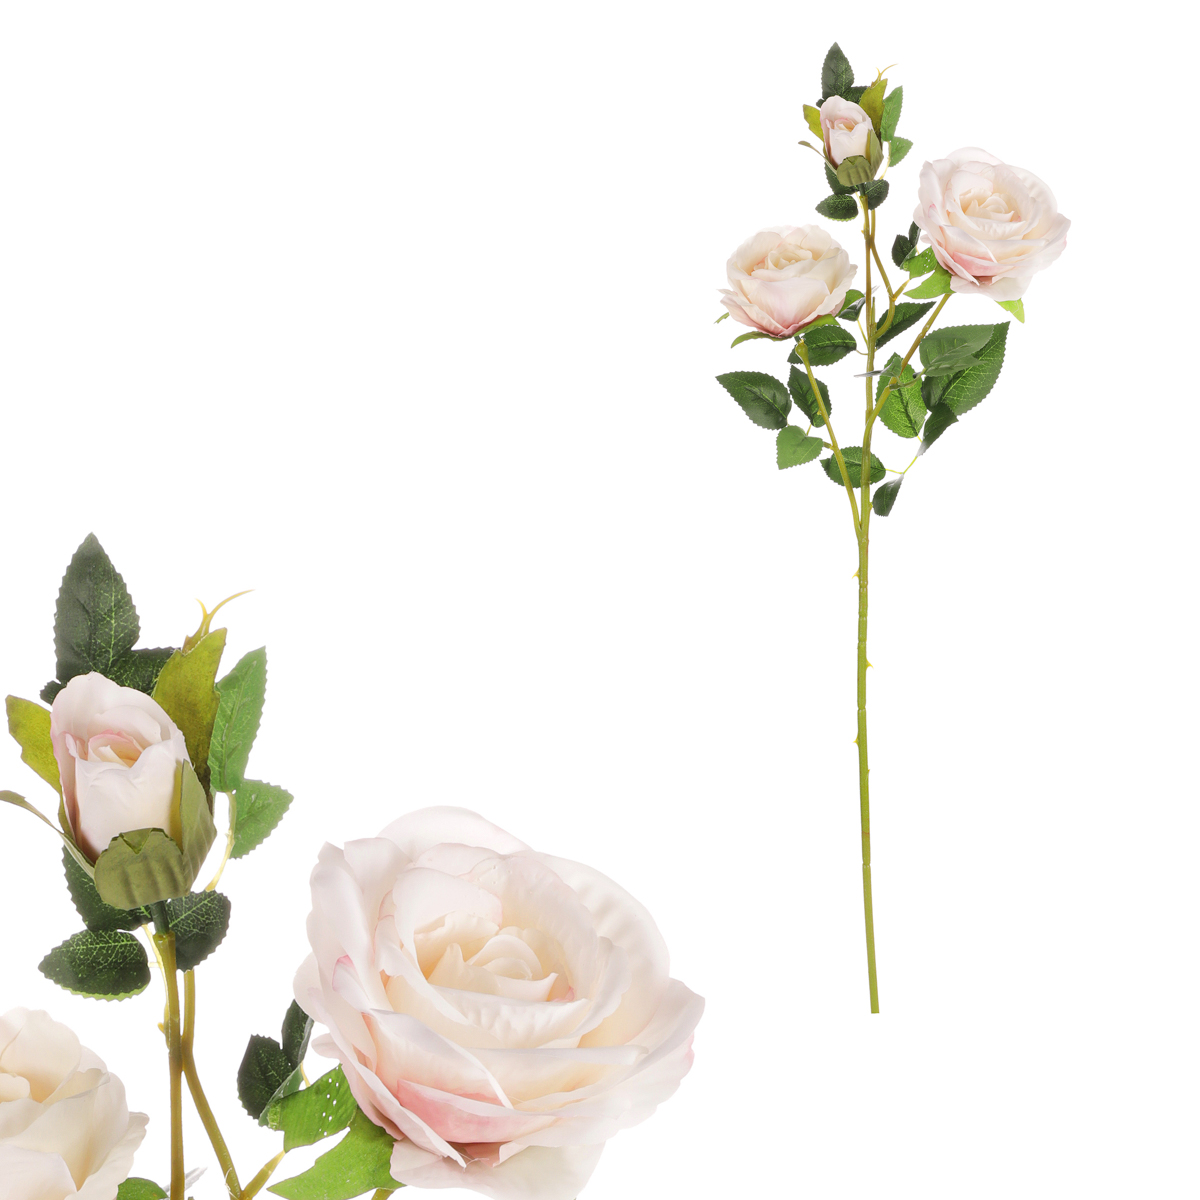 Růže, dva květy s poupětem, barva smetanovo-růžová. Květina umělá.